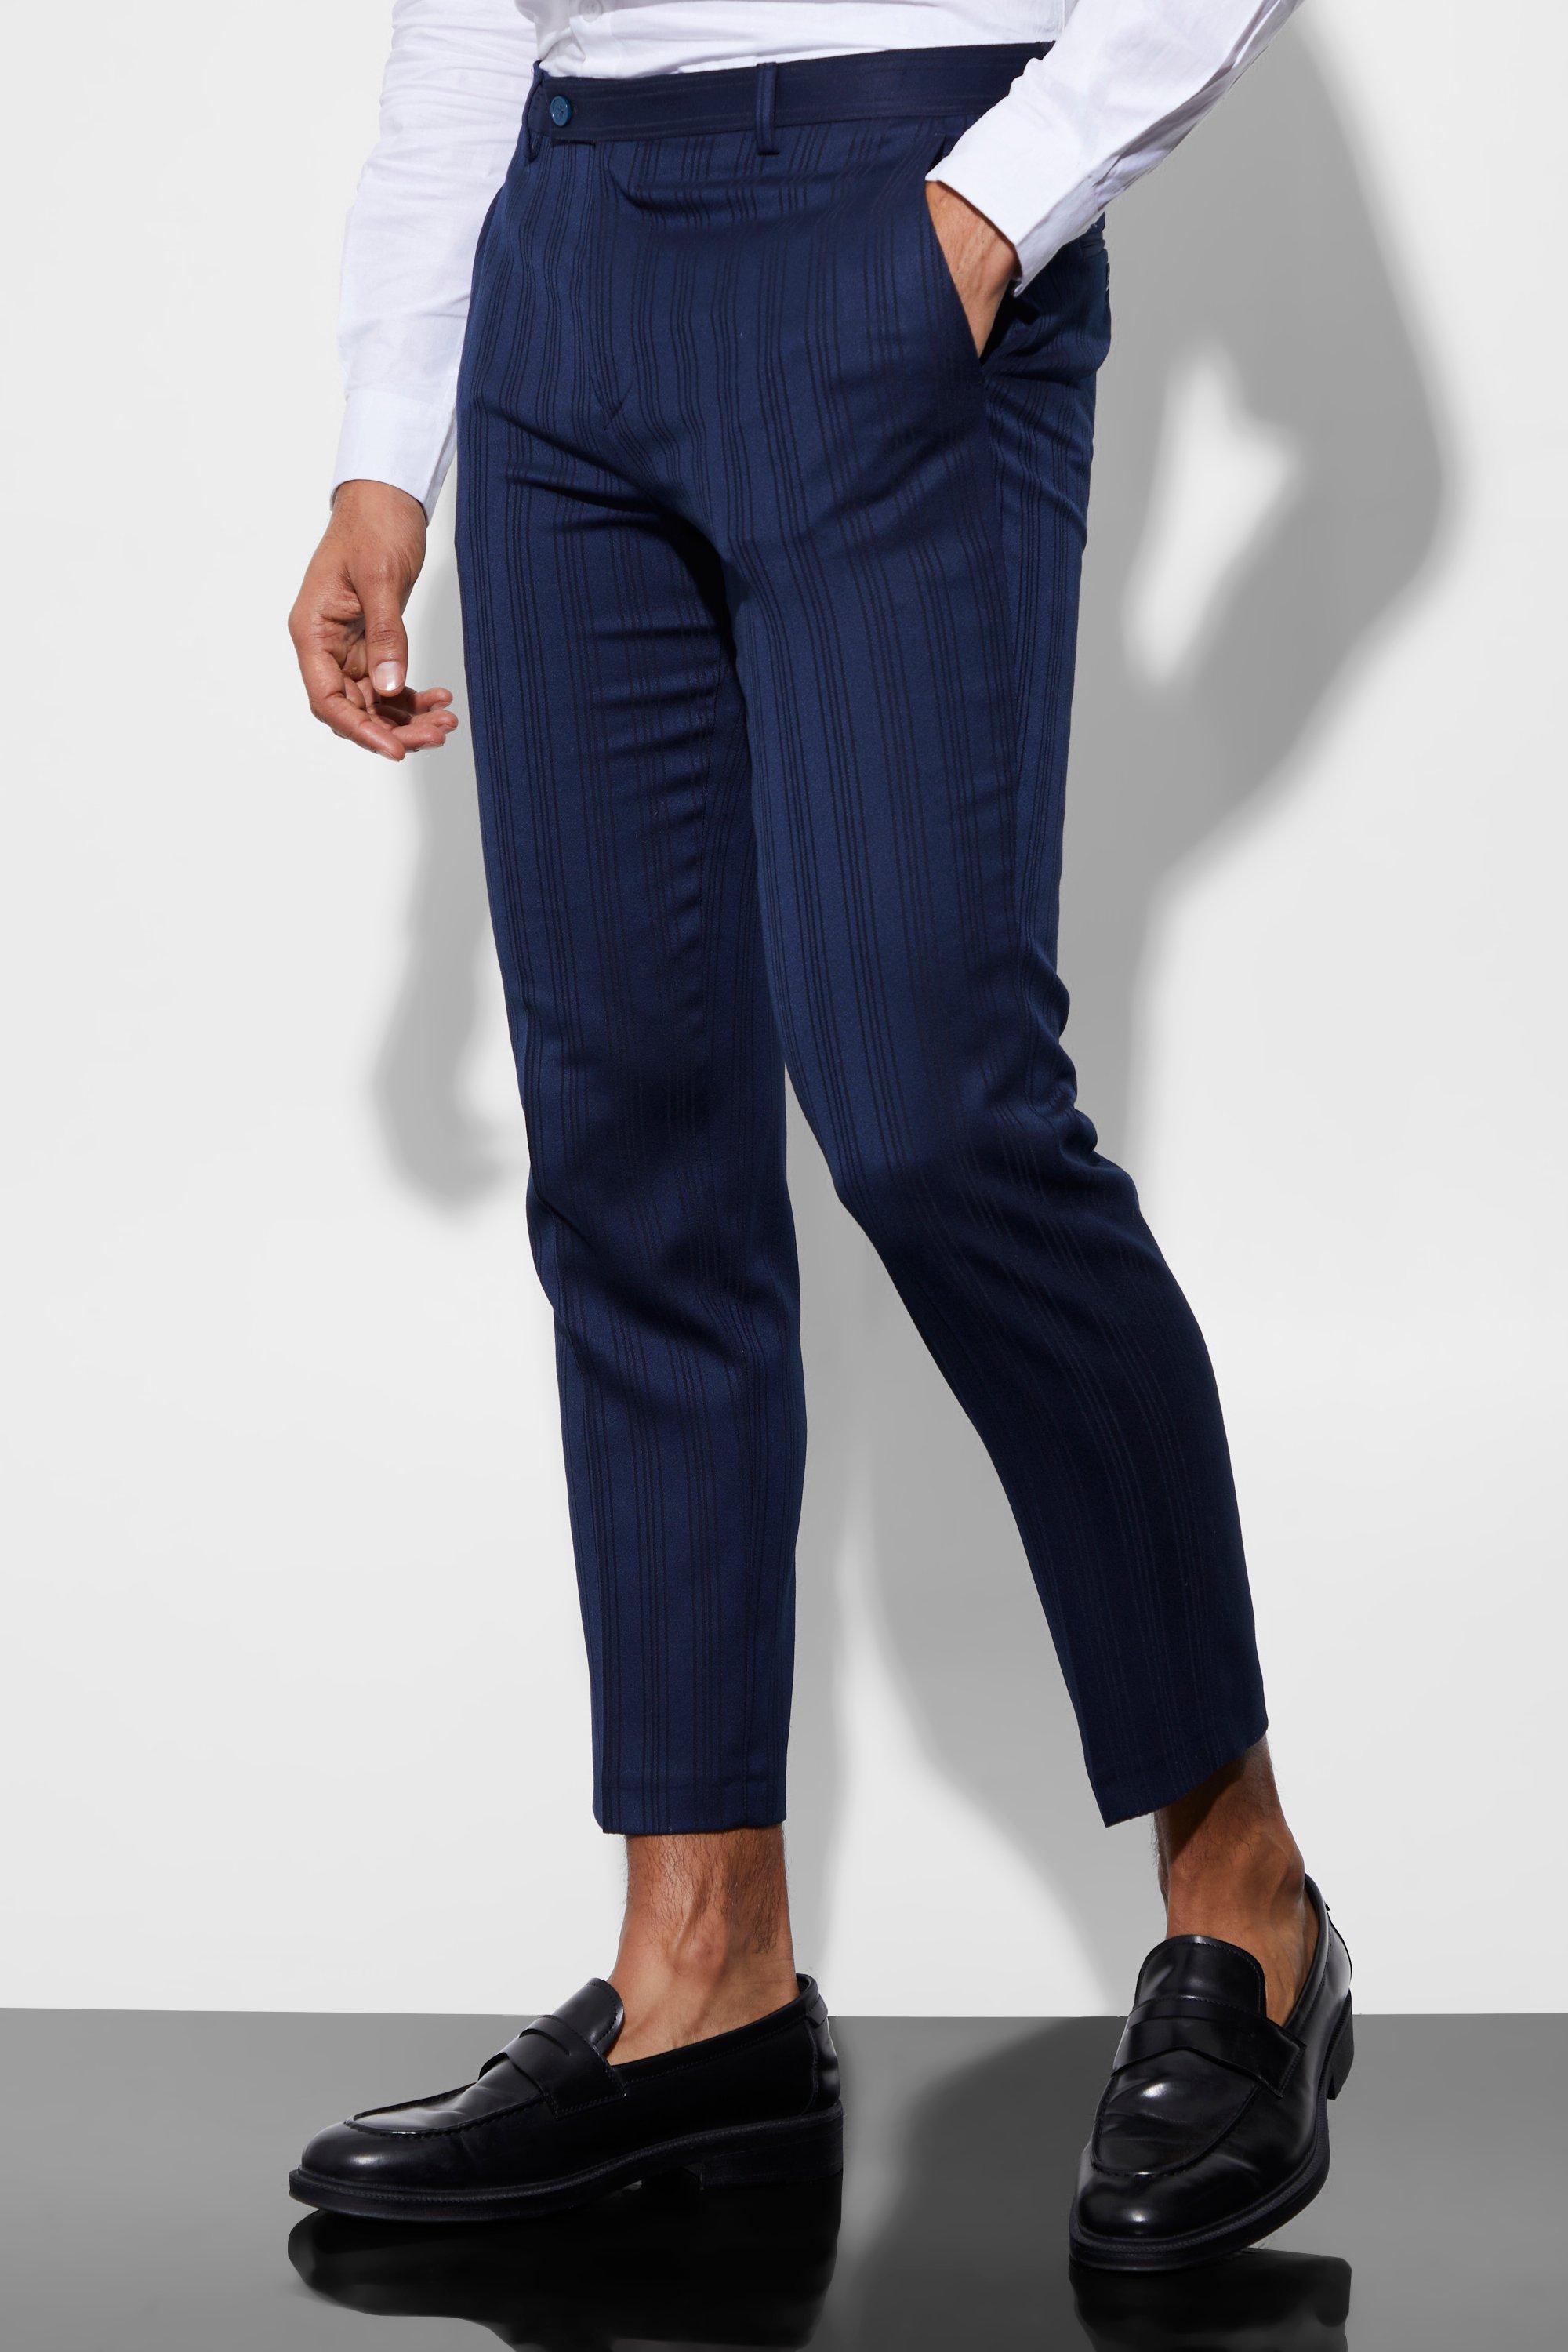 pantalon de costume slim court homme - bleu - 30l, bleu